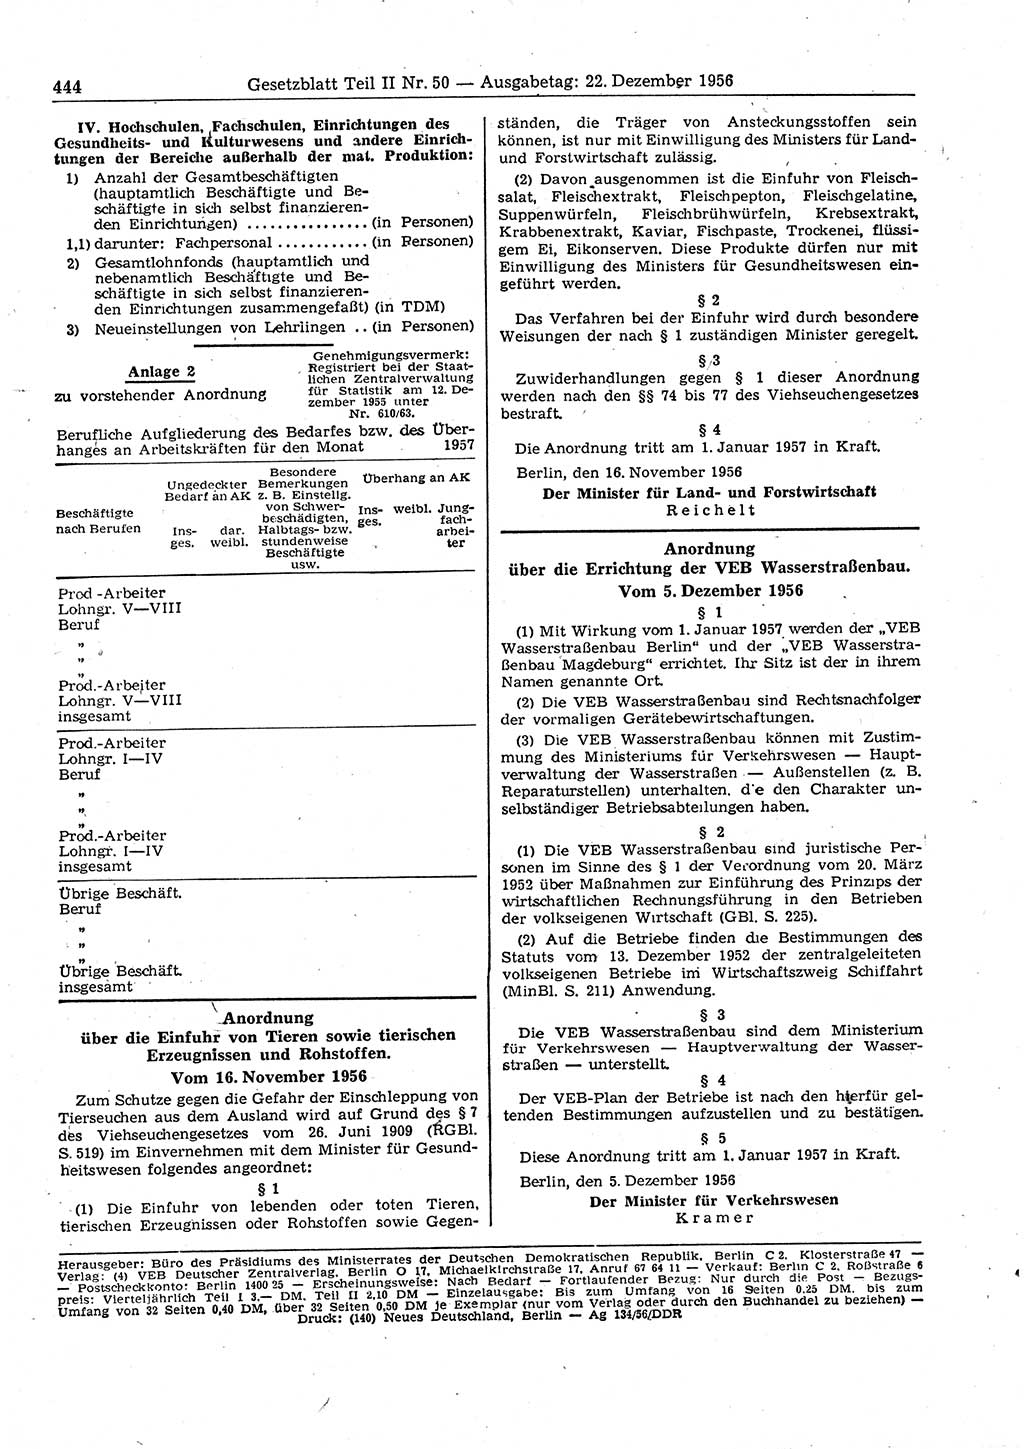 Gesetzblatt (GBl.) der Deutschen Demokratischen Republik (DDR) Teil ⅠⅠ 1956, Seite 444 (GBl. DDR ⅠⅠ 1956, S. 444)